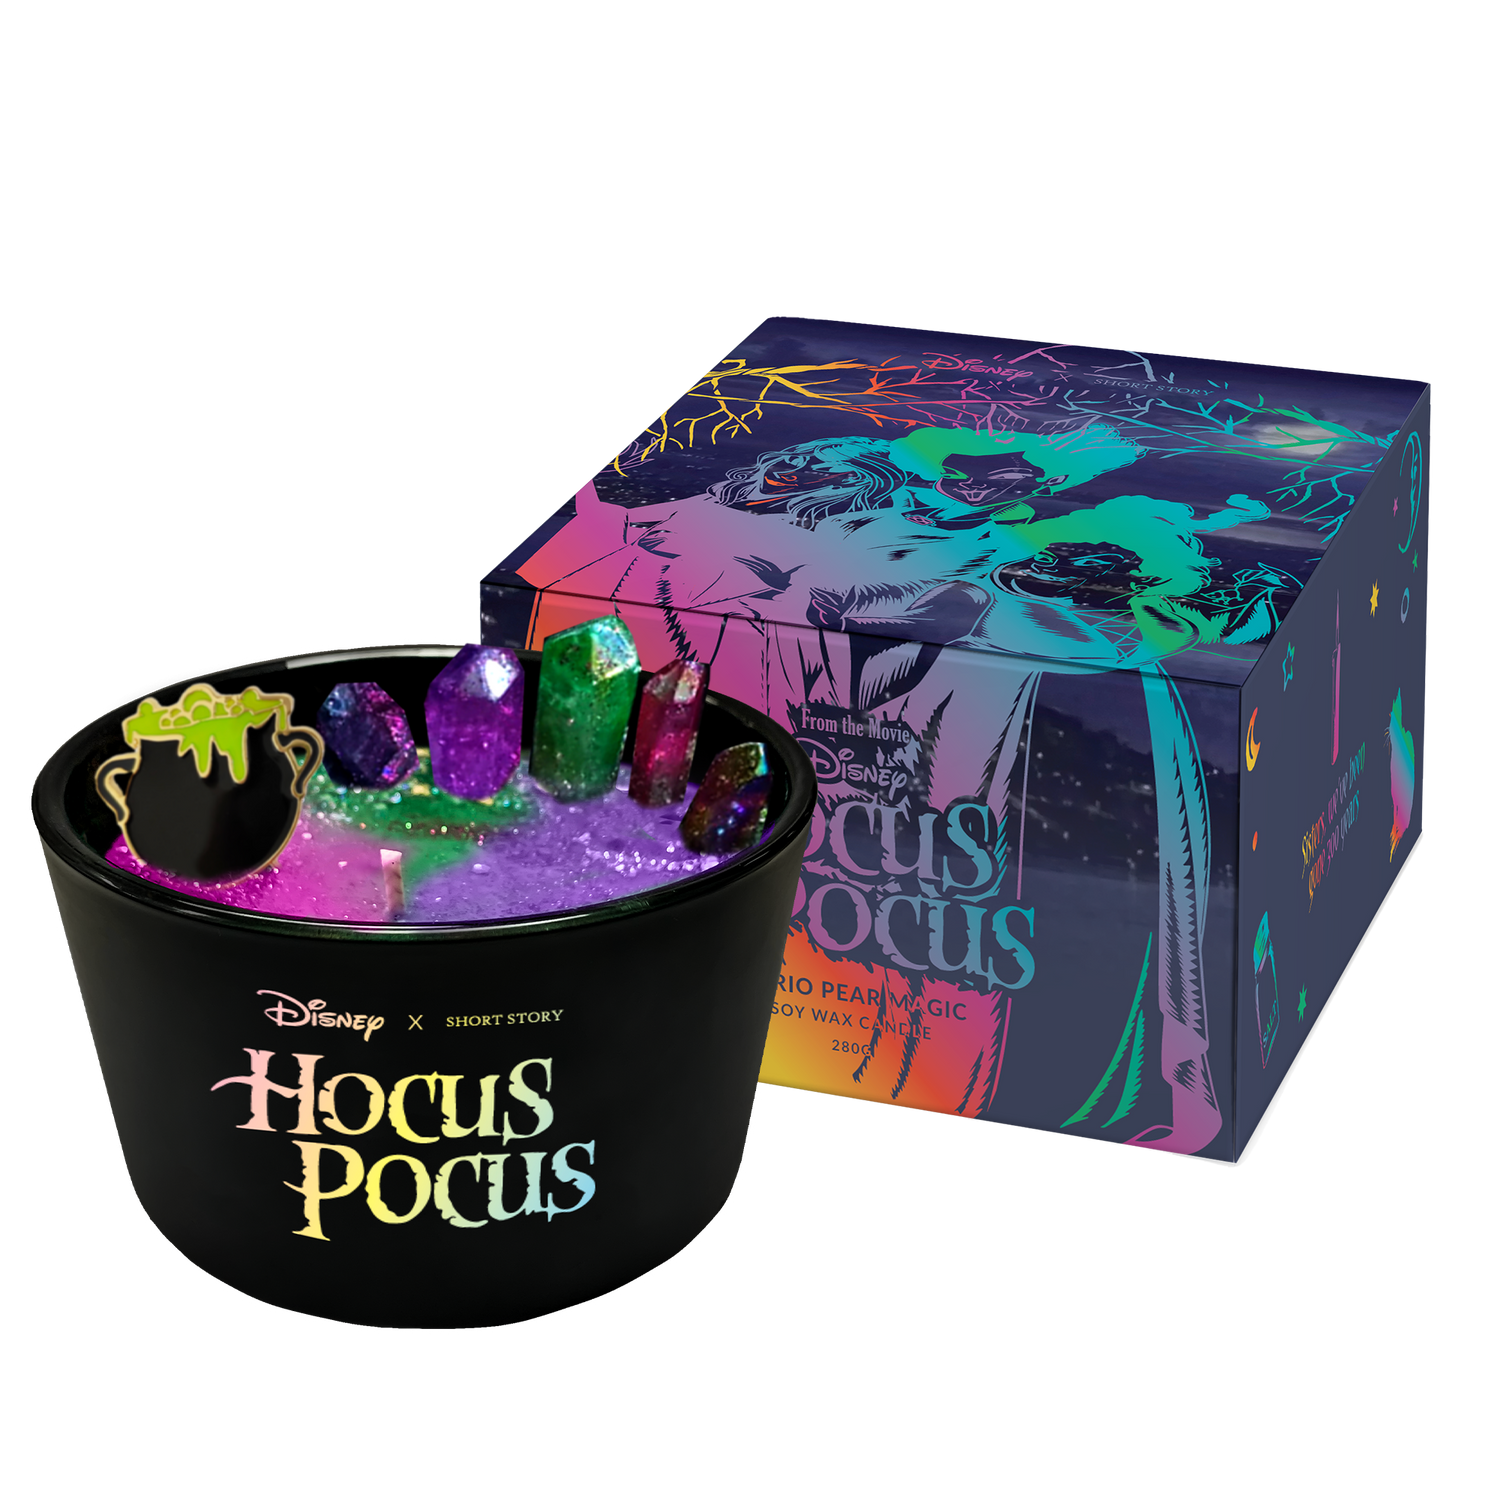 Disney Candle Hocus Pocus II